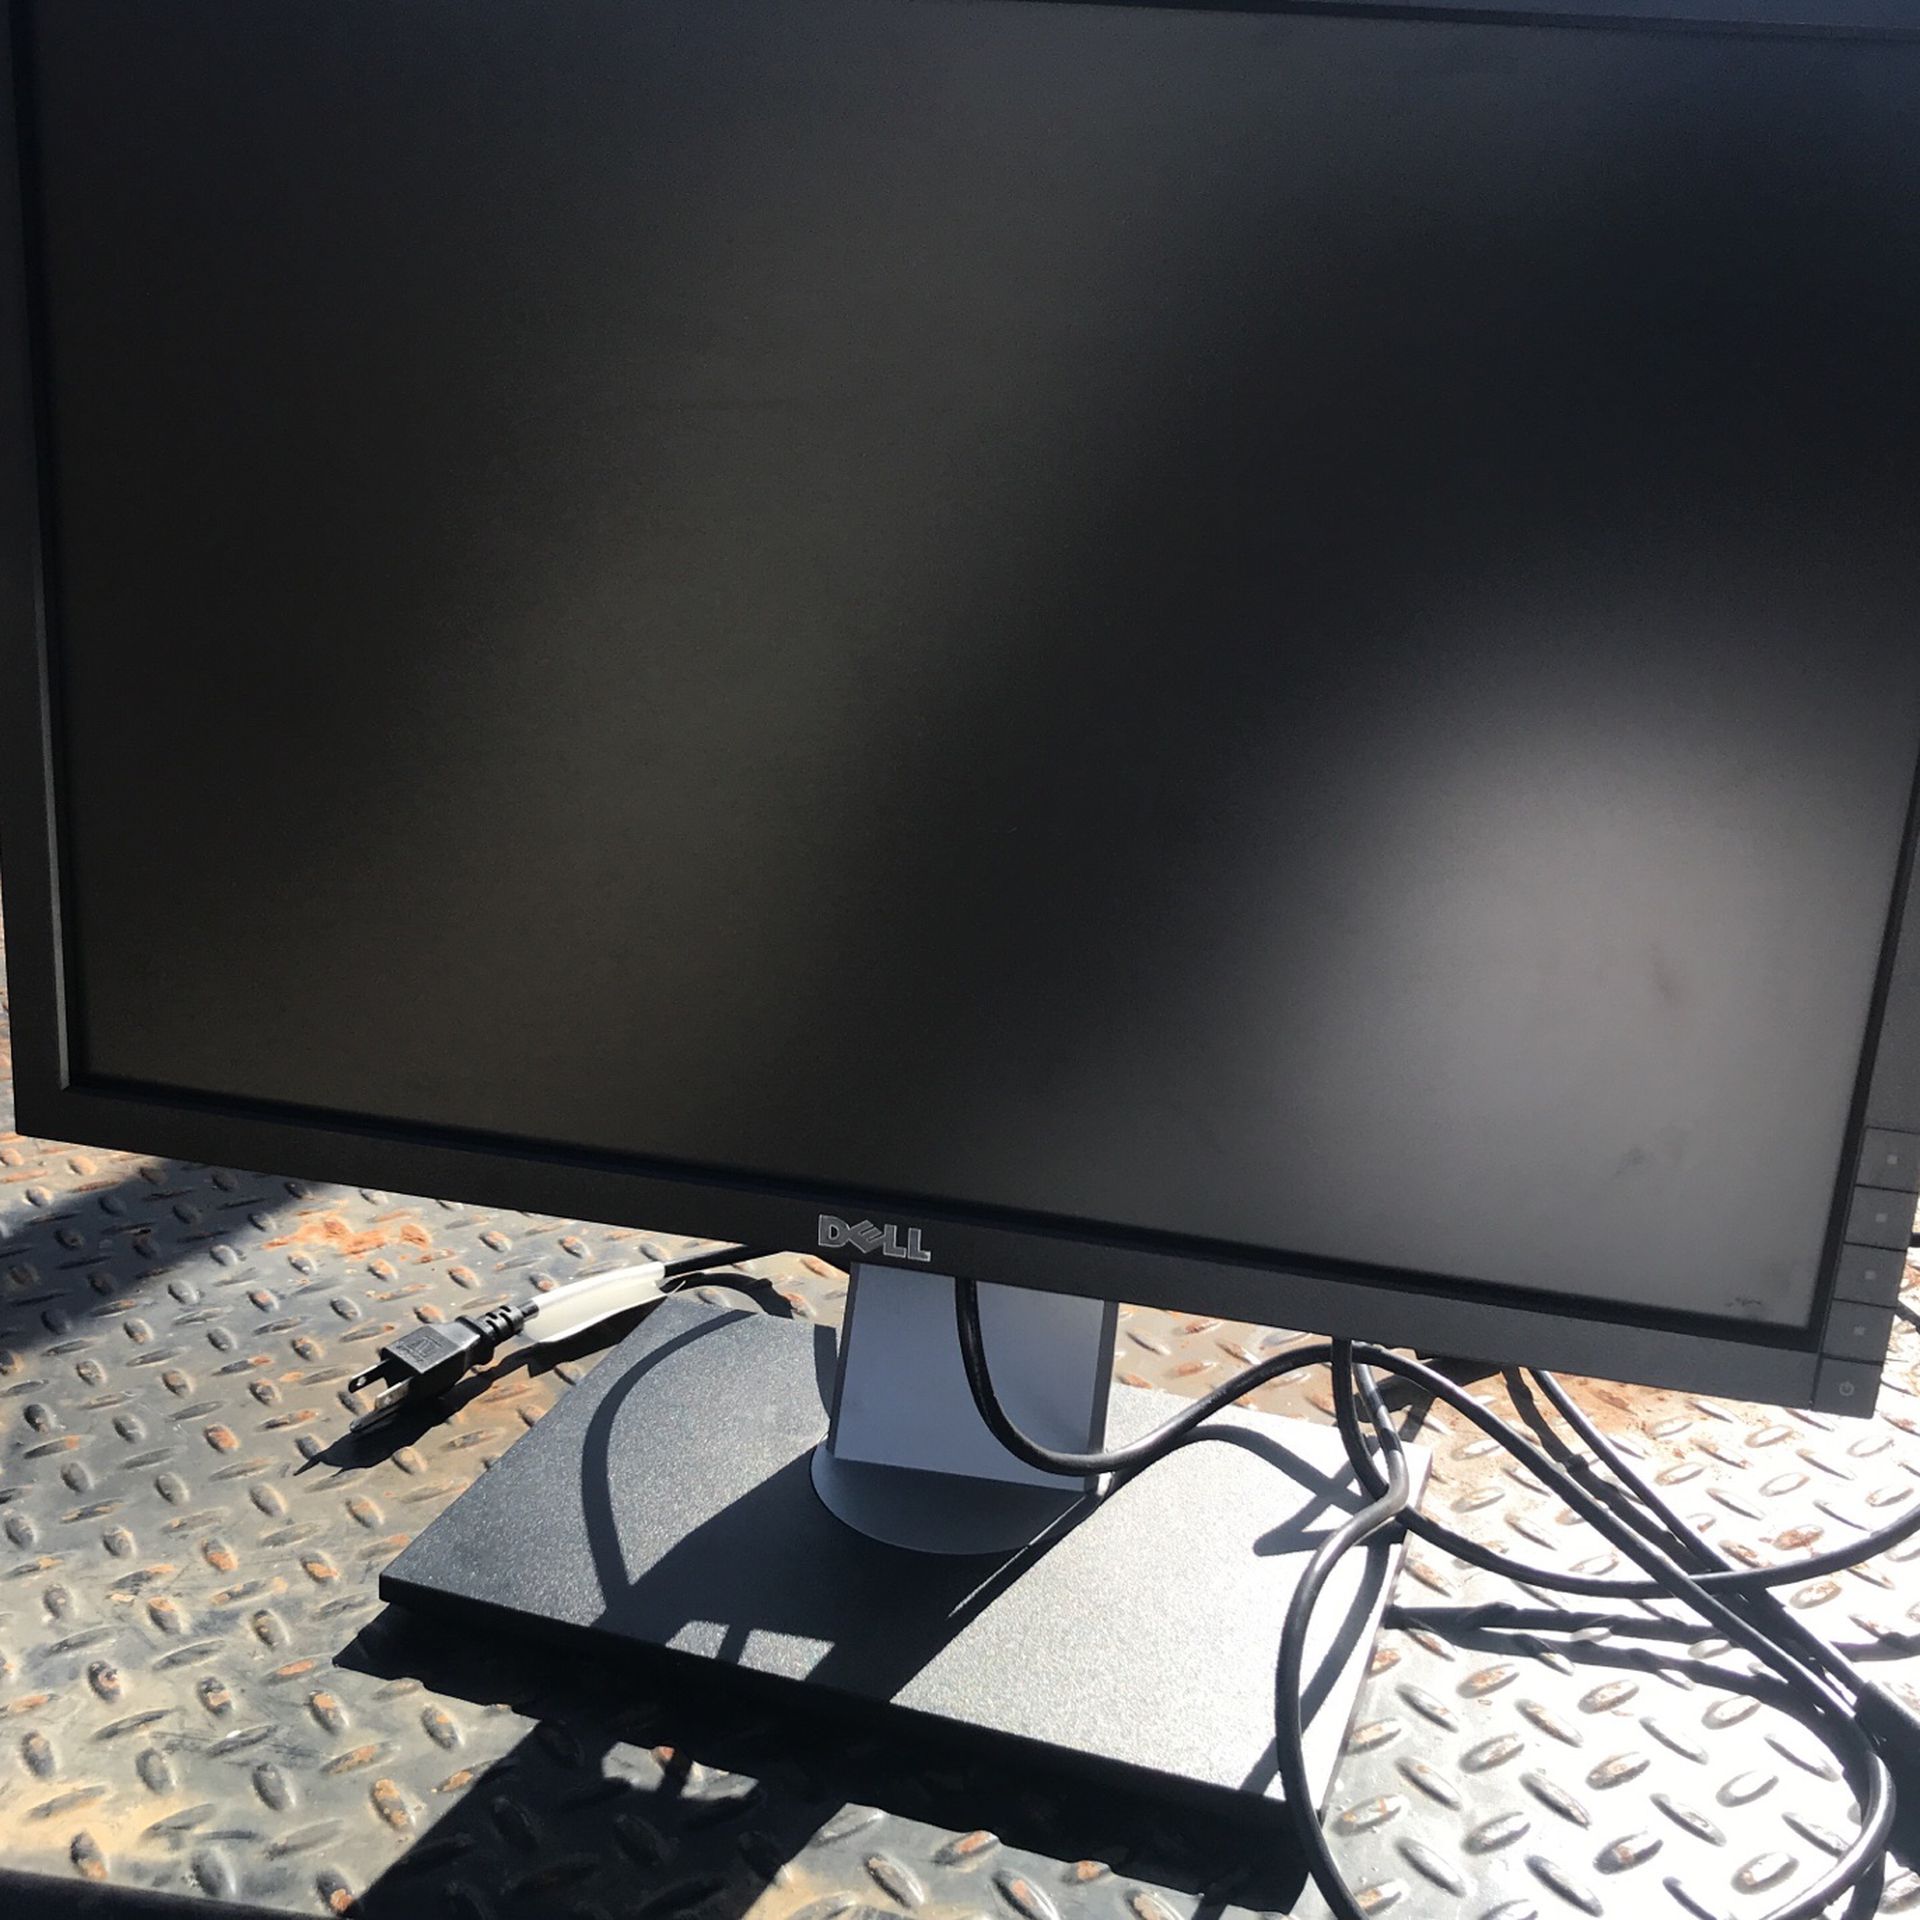 Dell Computer Screen